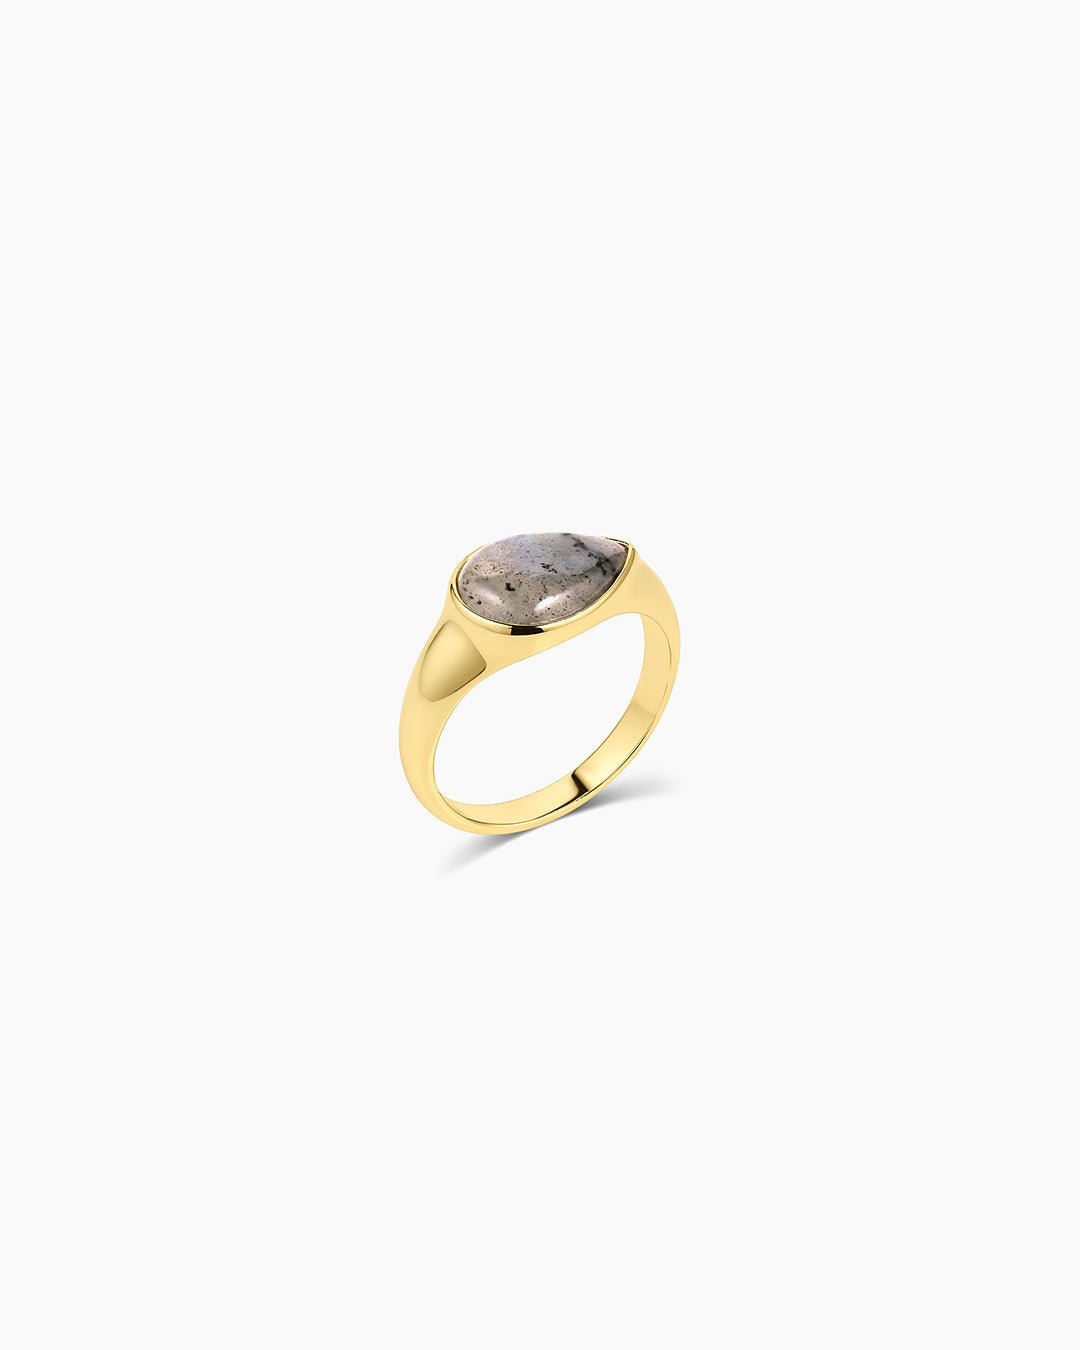 Lou Gemstone Ring - Labradorite || option::Gold Plated